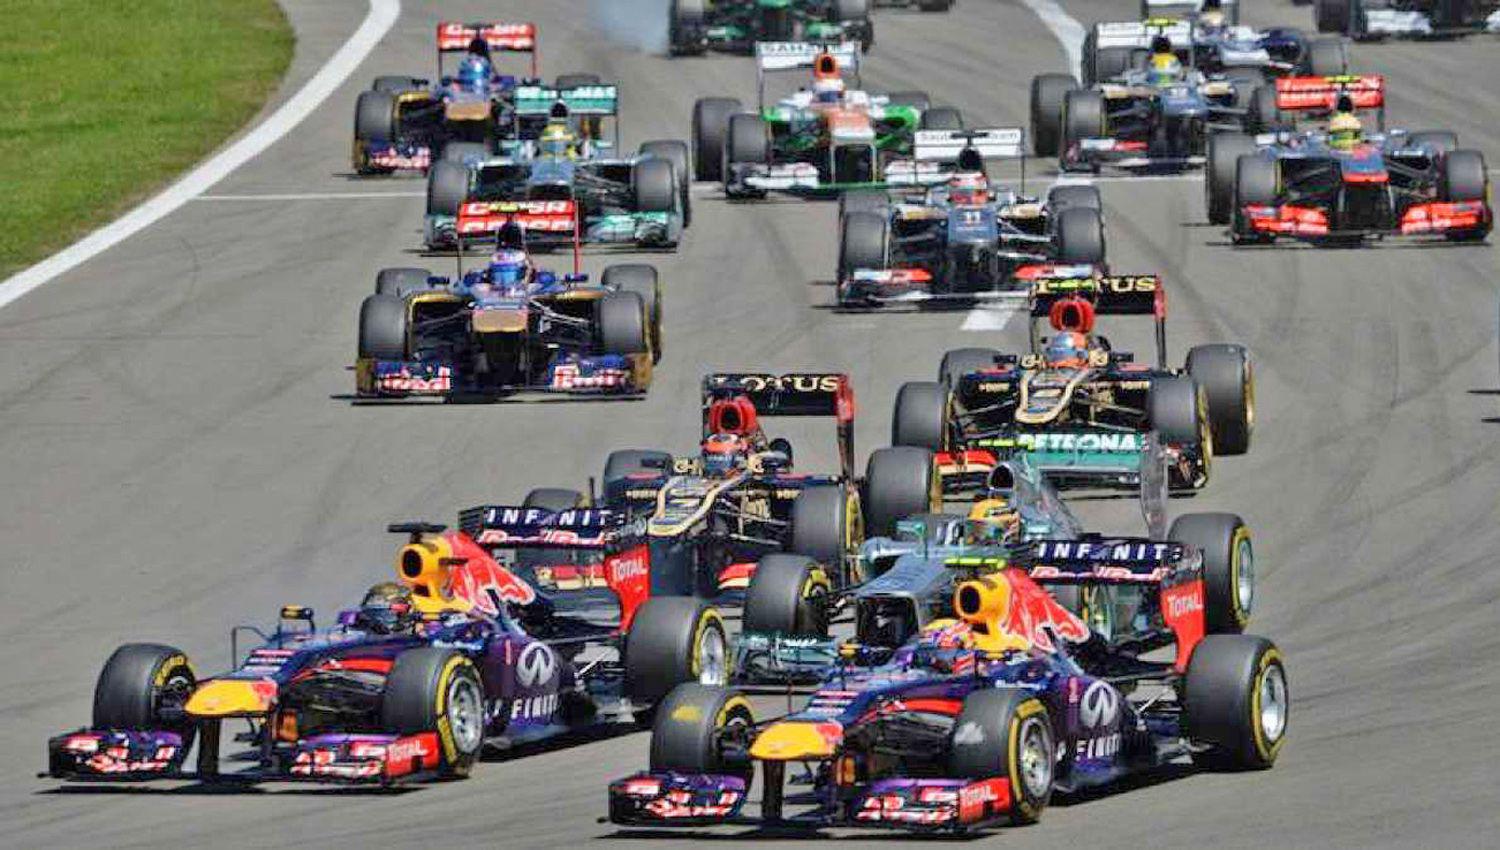 El espect�culo de la Fórmula 1 tendr� su punto de partida en principio para marzo en el circuito de Bahrain